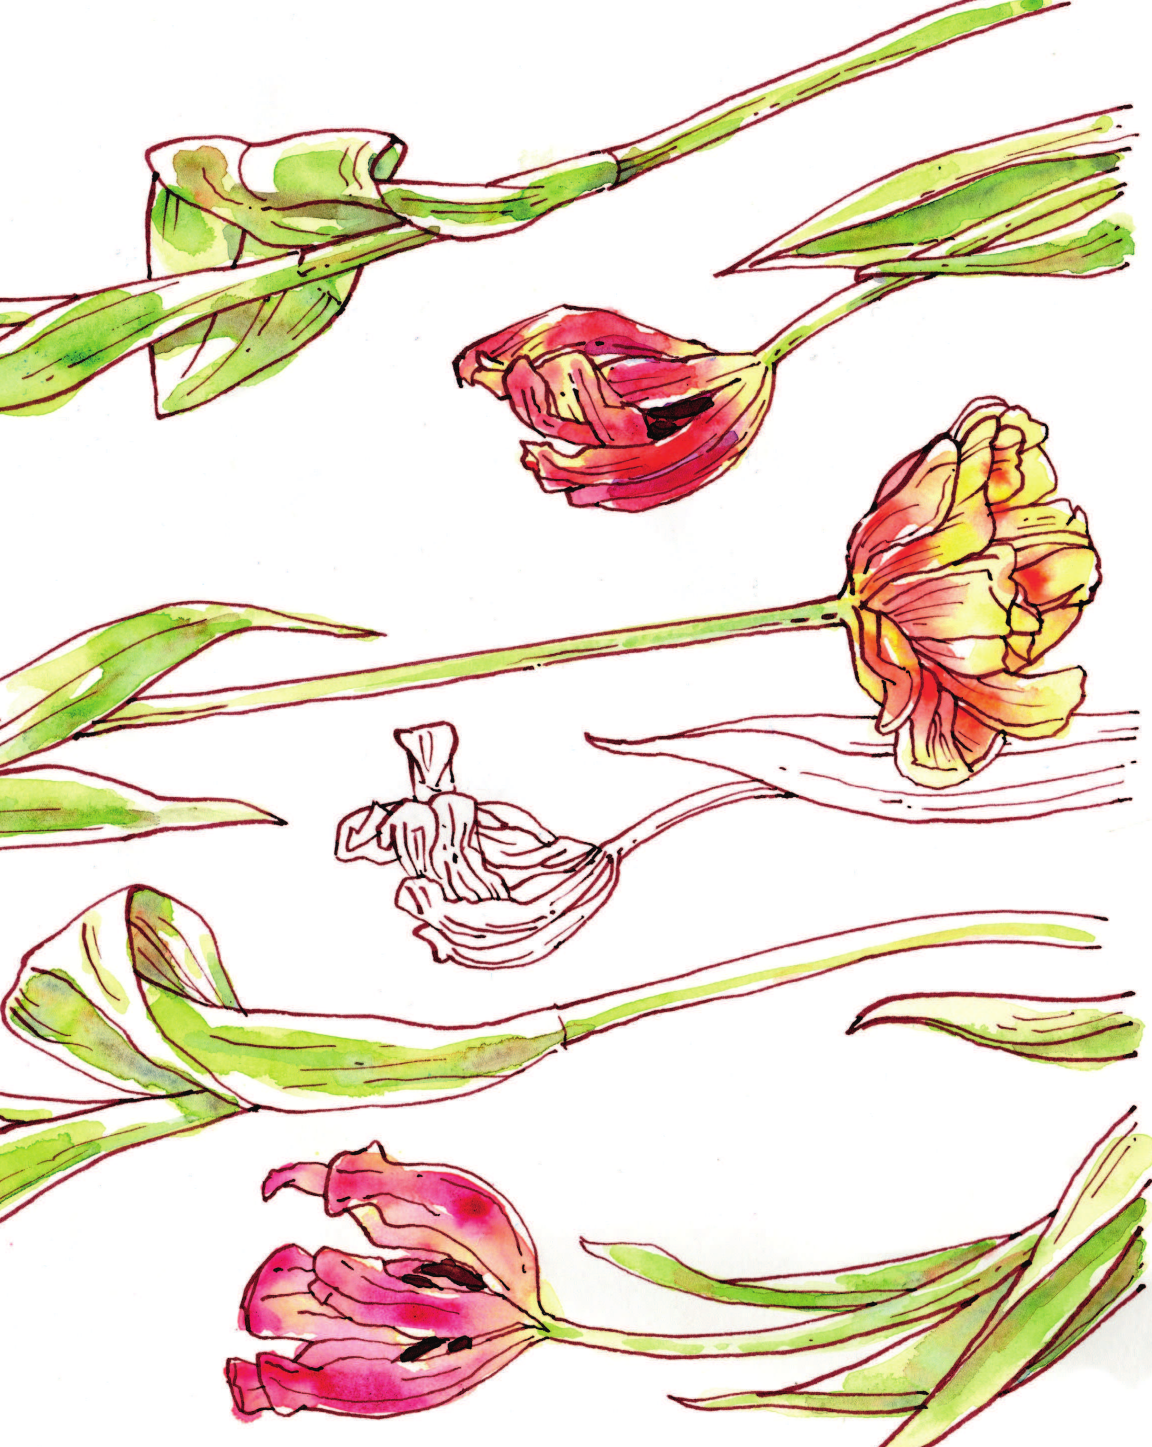 Цветочный скетчинг. Как создавать быстрые зарисовки цветов и растений - фото №4